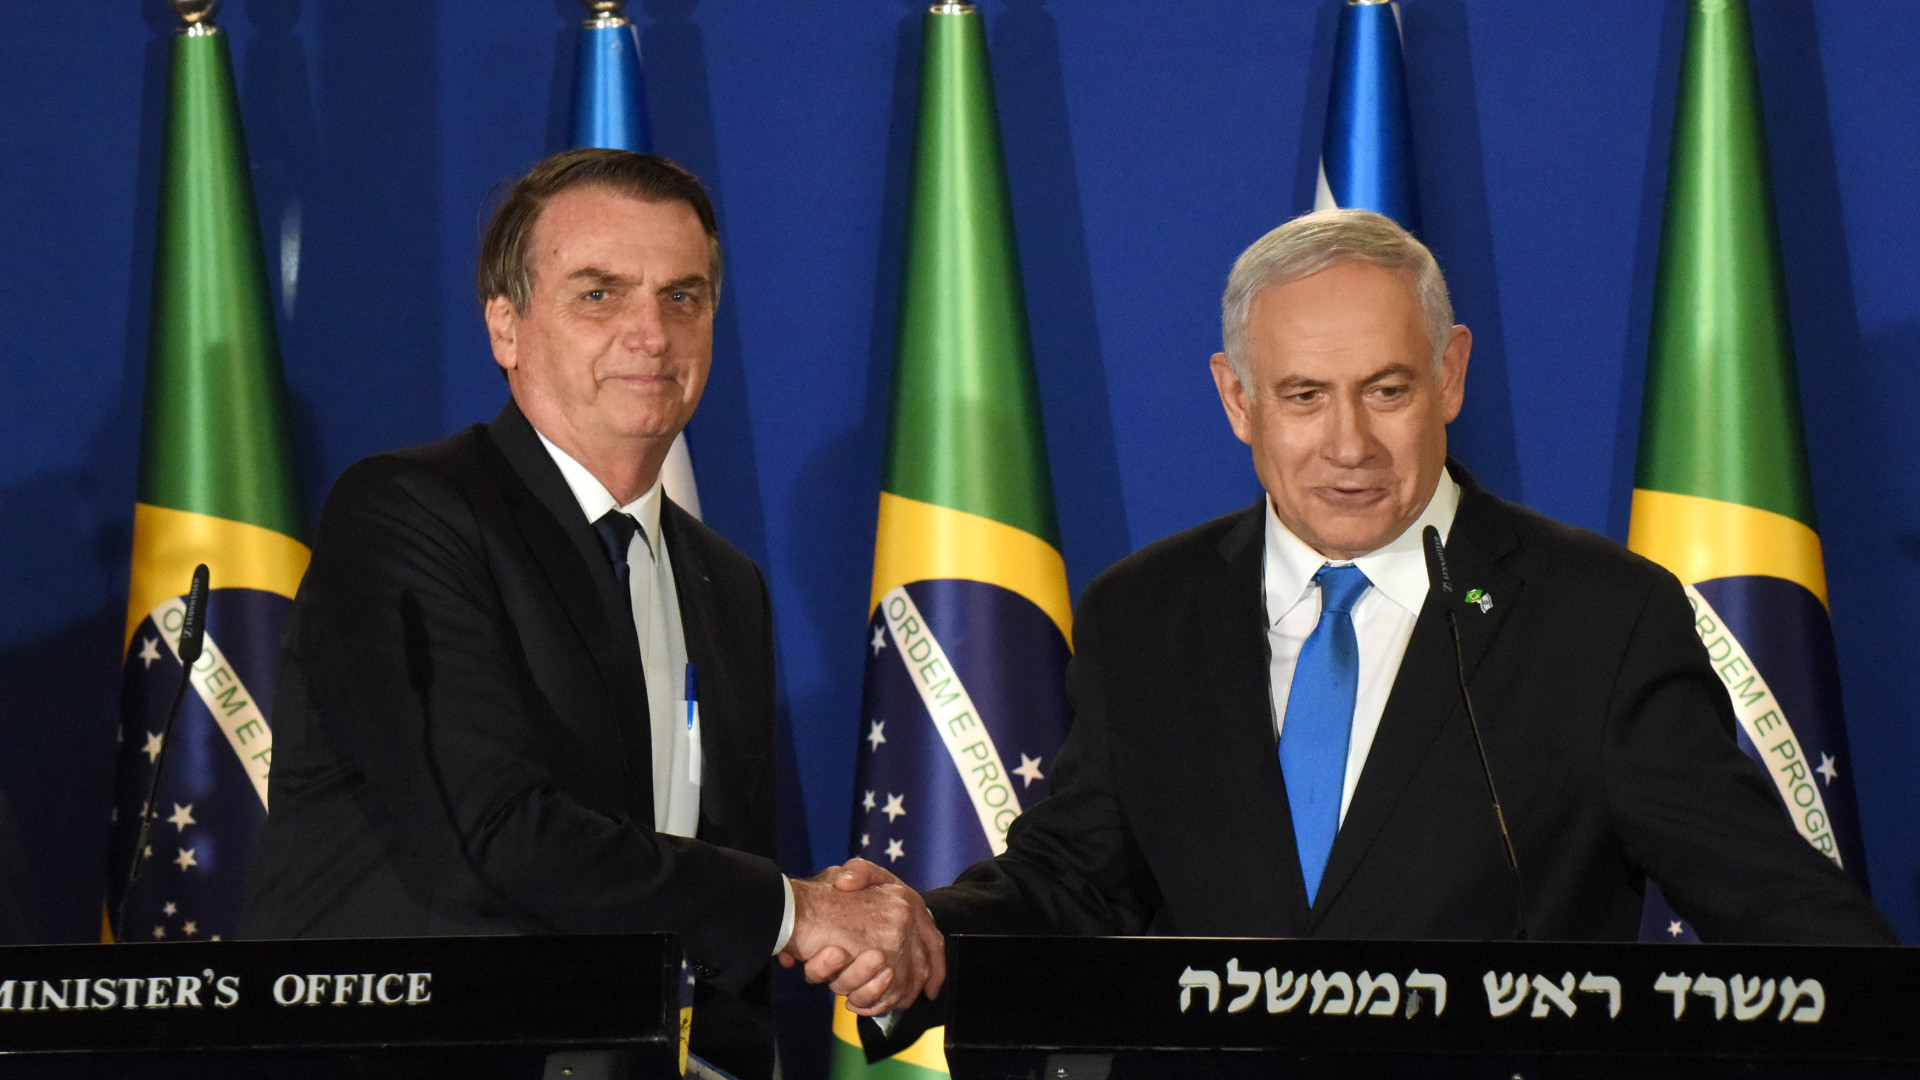 Em hebraico, Bolsonaro diz que ama Israel ao visitar 'irmão' Netanyahu